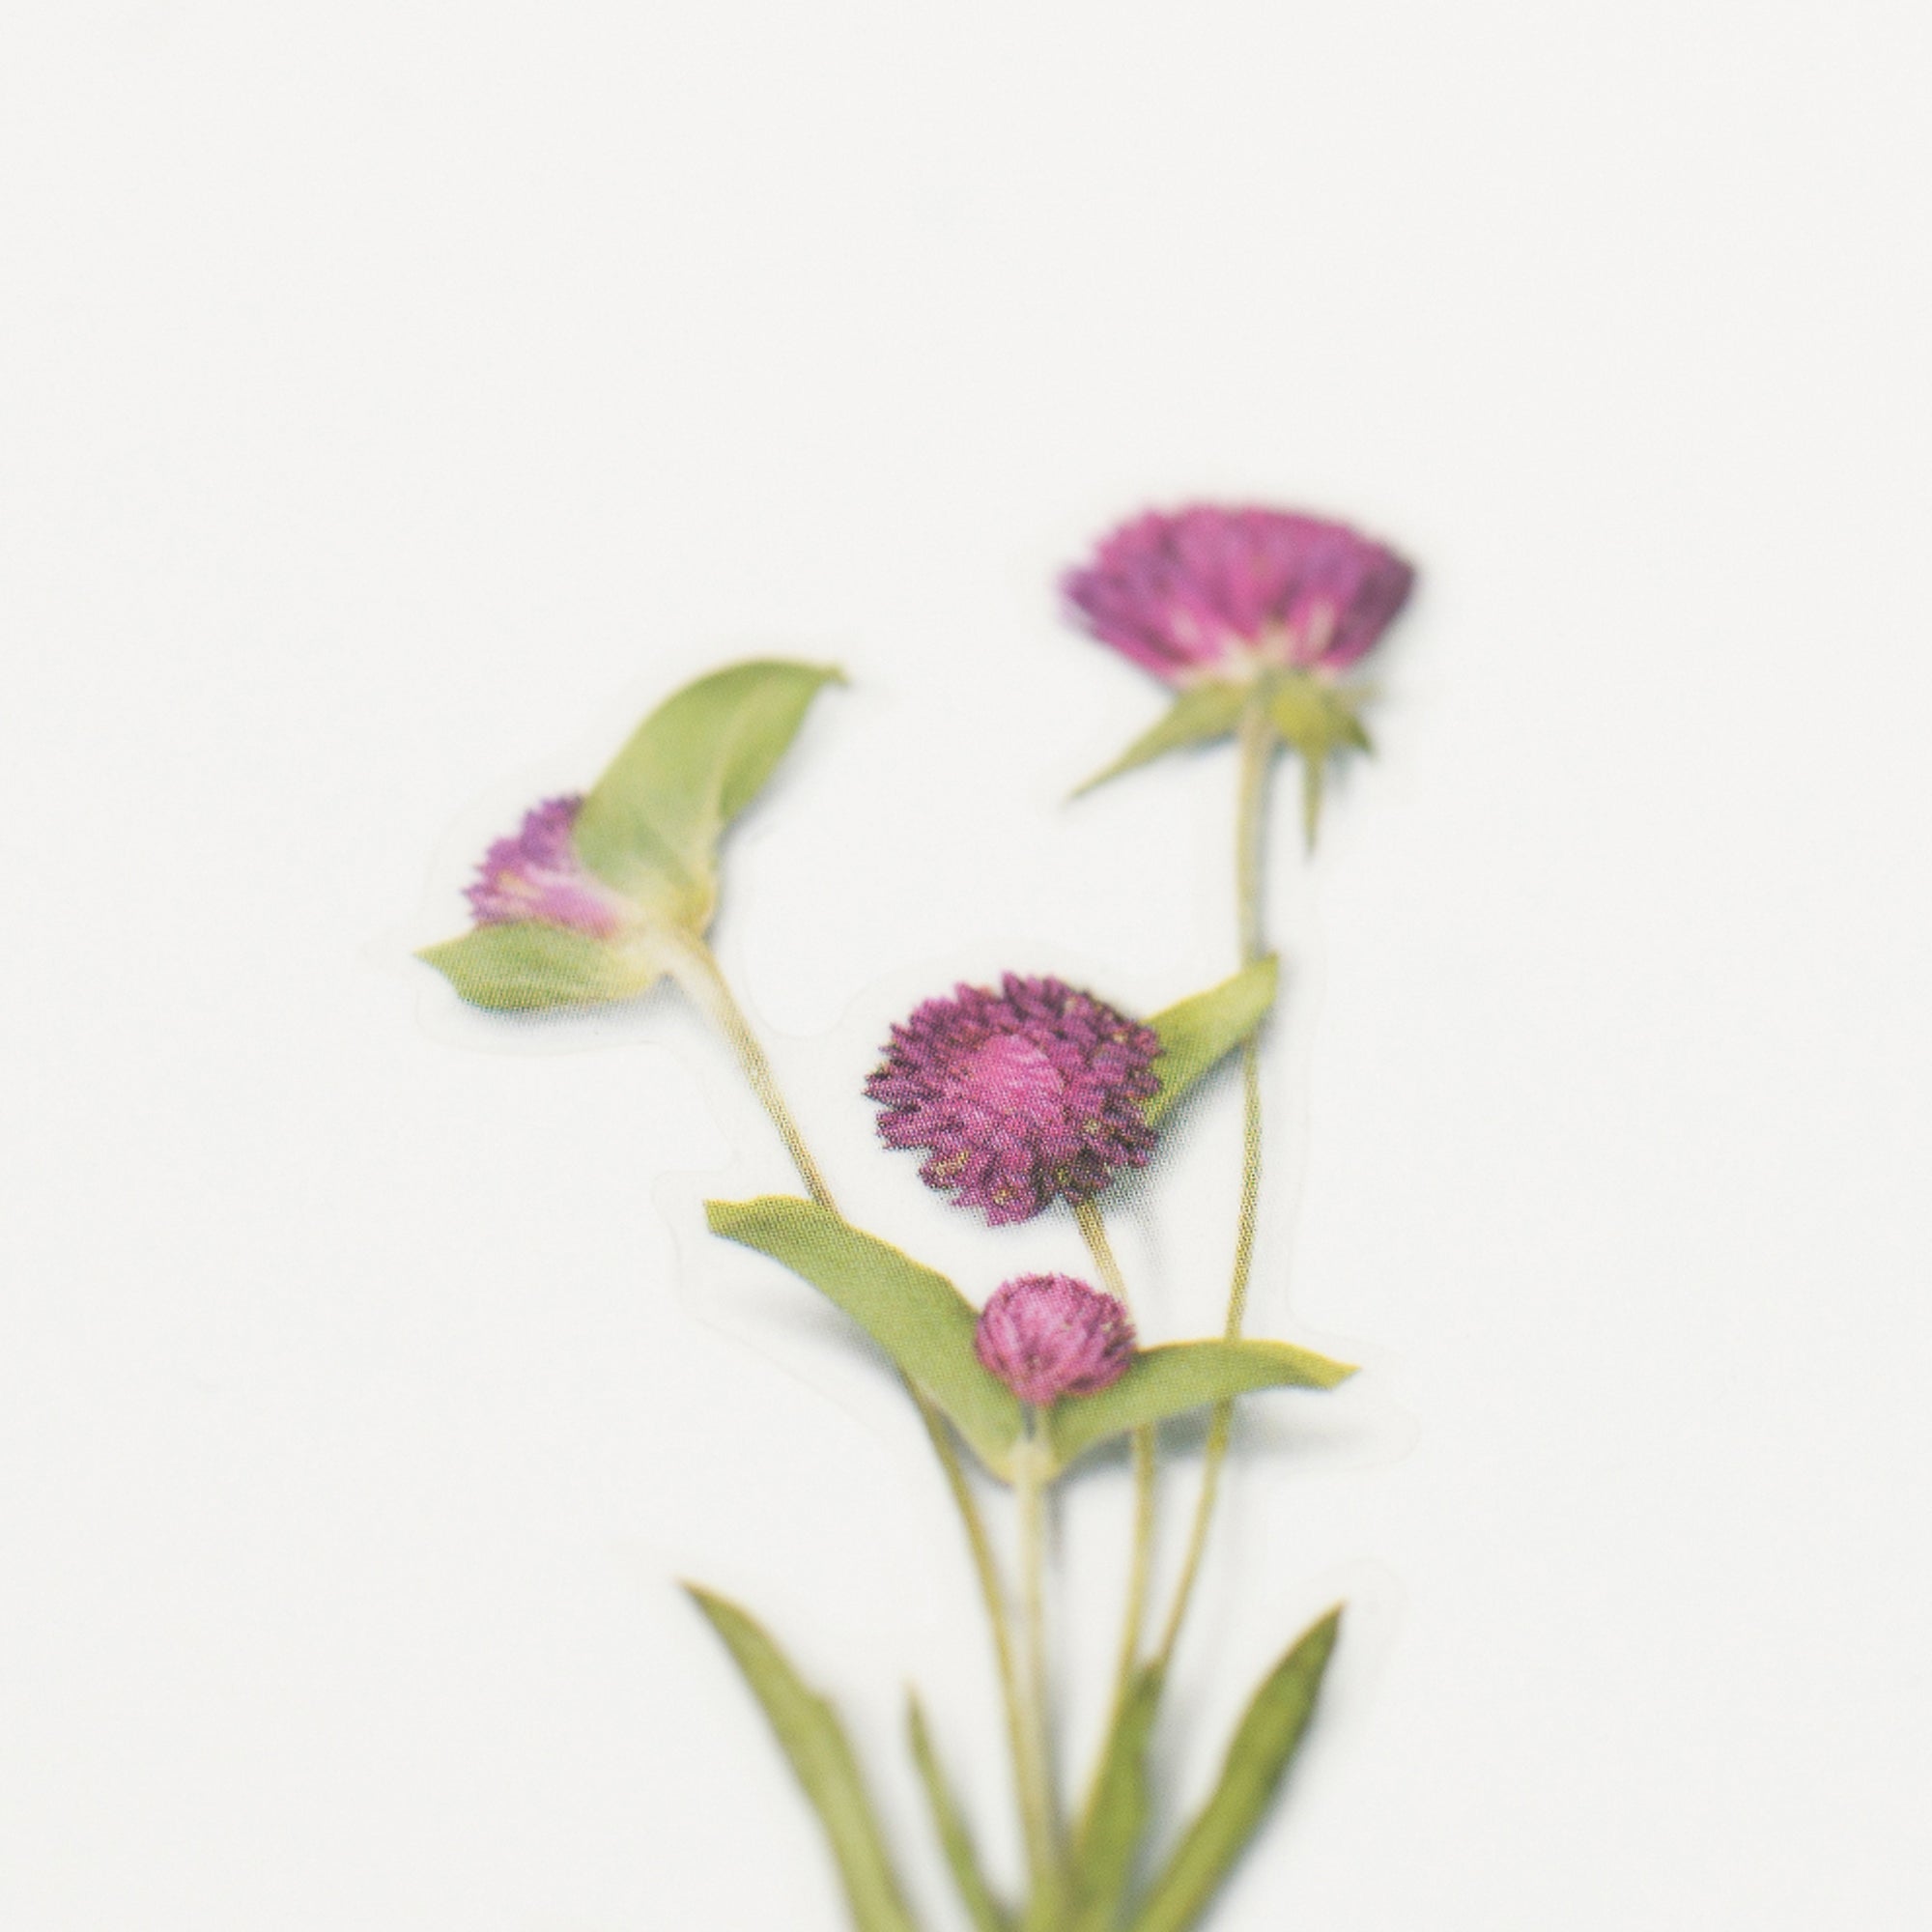 Appree - Pressed Flower Sticker - Globe Amaranth-Sticker-DutchMills